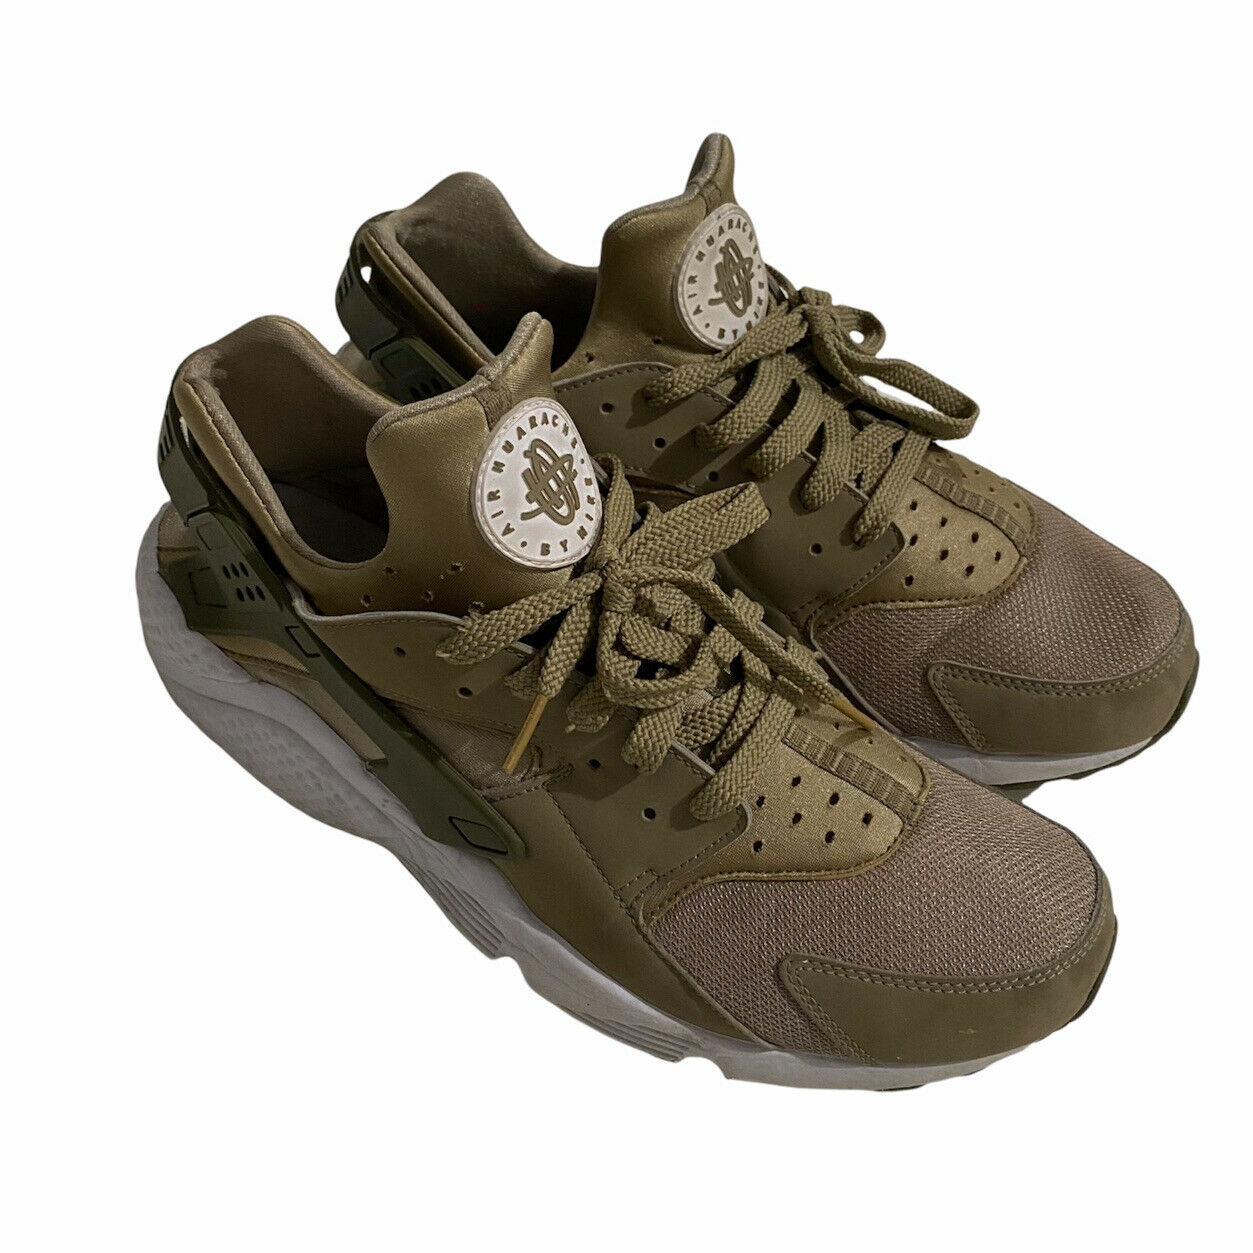 Nike Air Huarache Run Camo Cargo Khaki Green Tan Shoes 318429-200 Men's Size 13